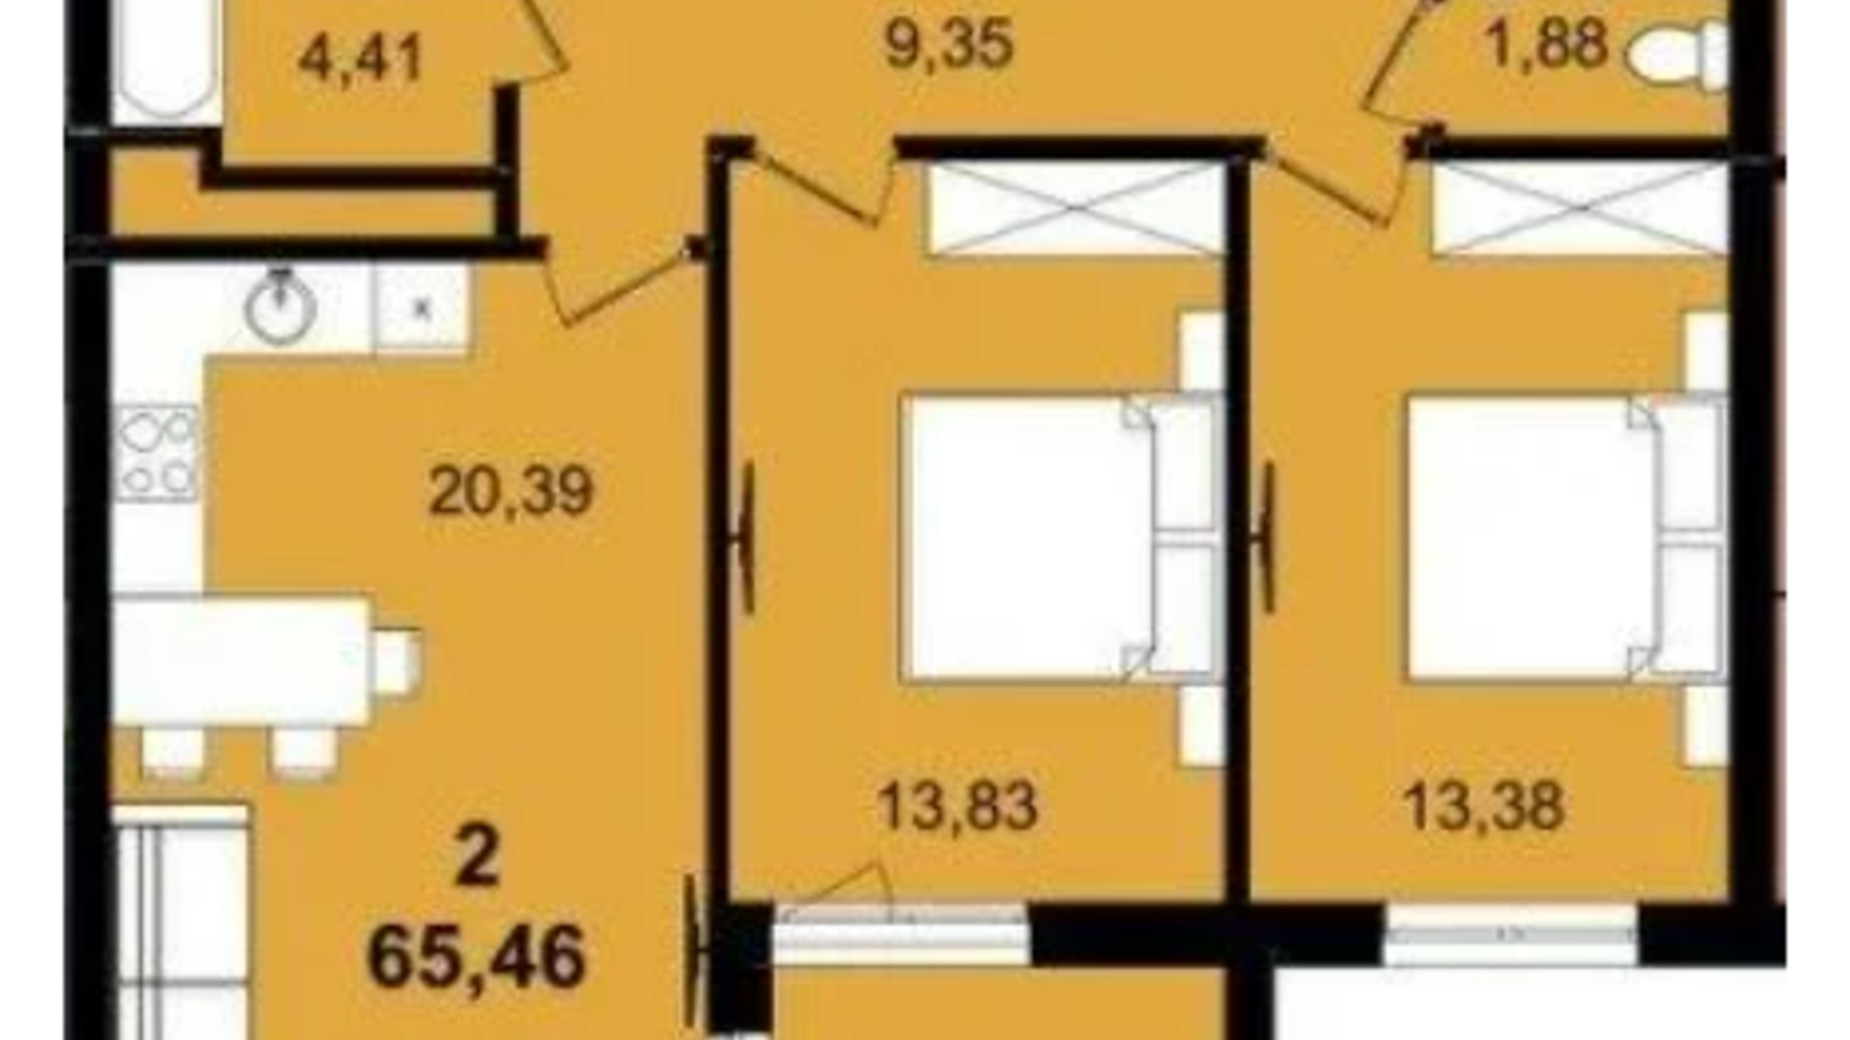 Планування 2-кімнатної квартири в ЖК Infinity Park 65.46 м², фото 630786